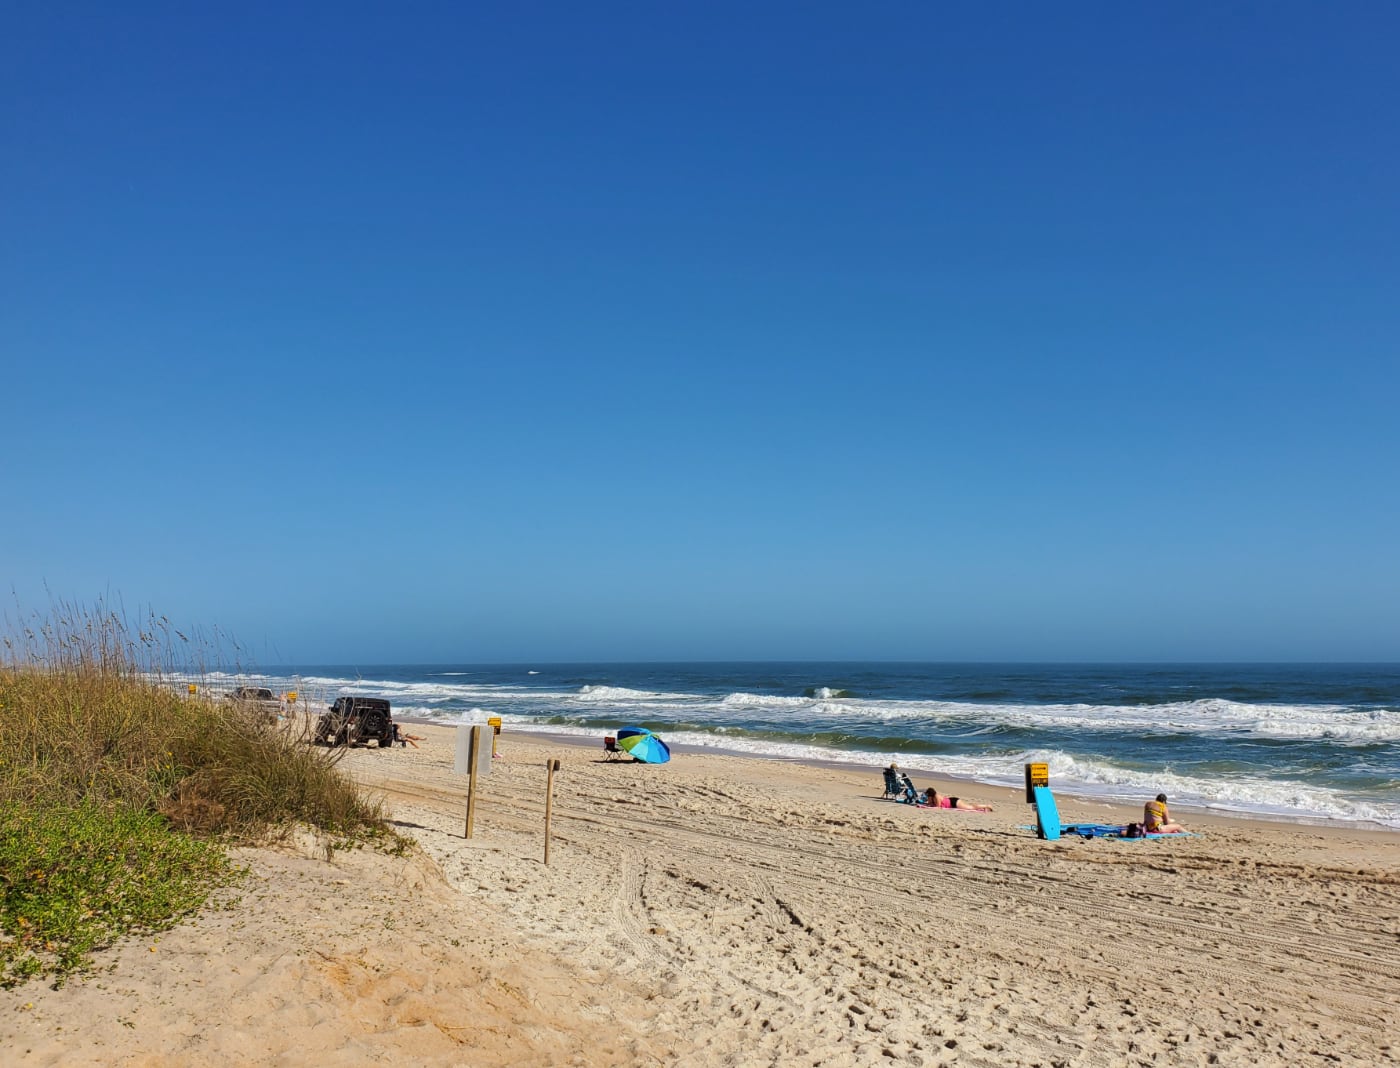 The driving beach of Vilano Beach